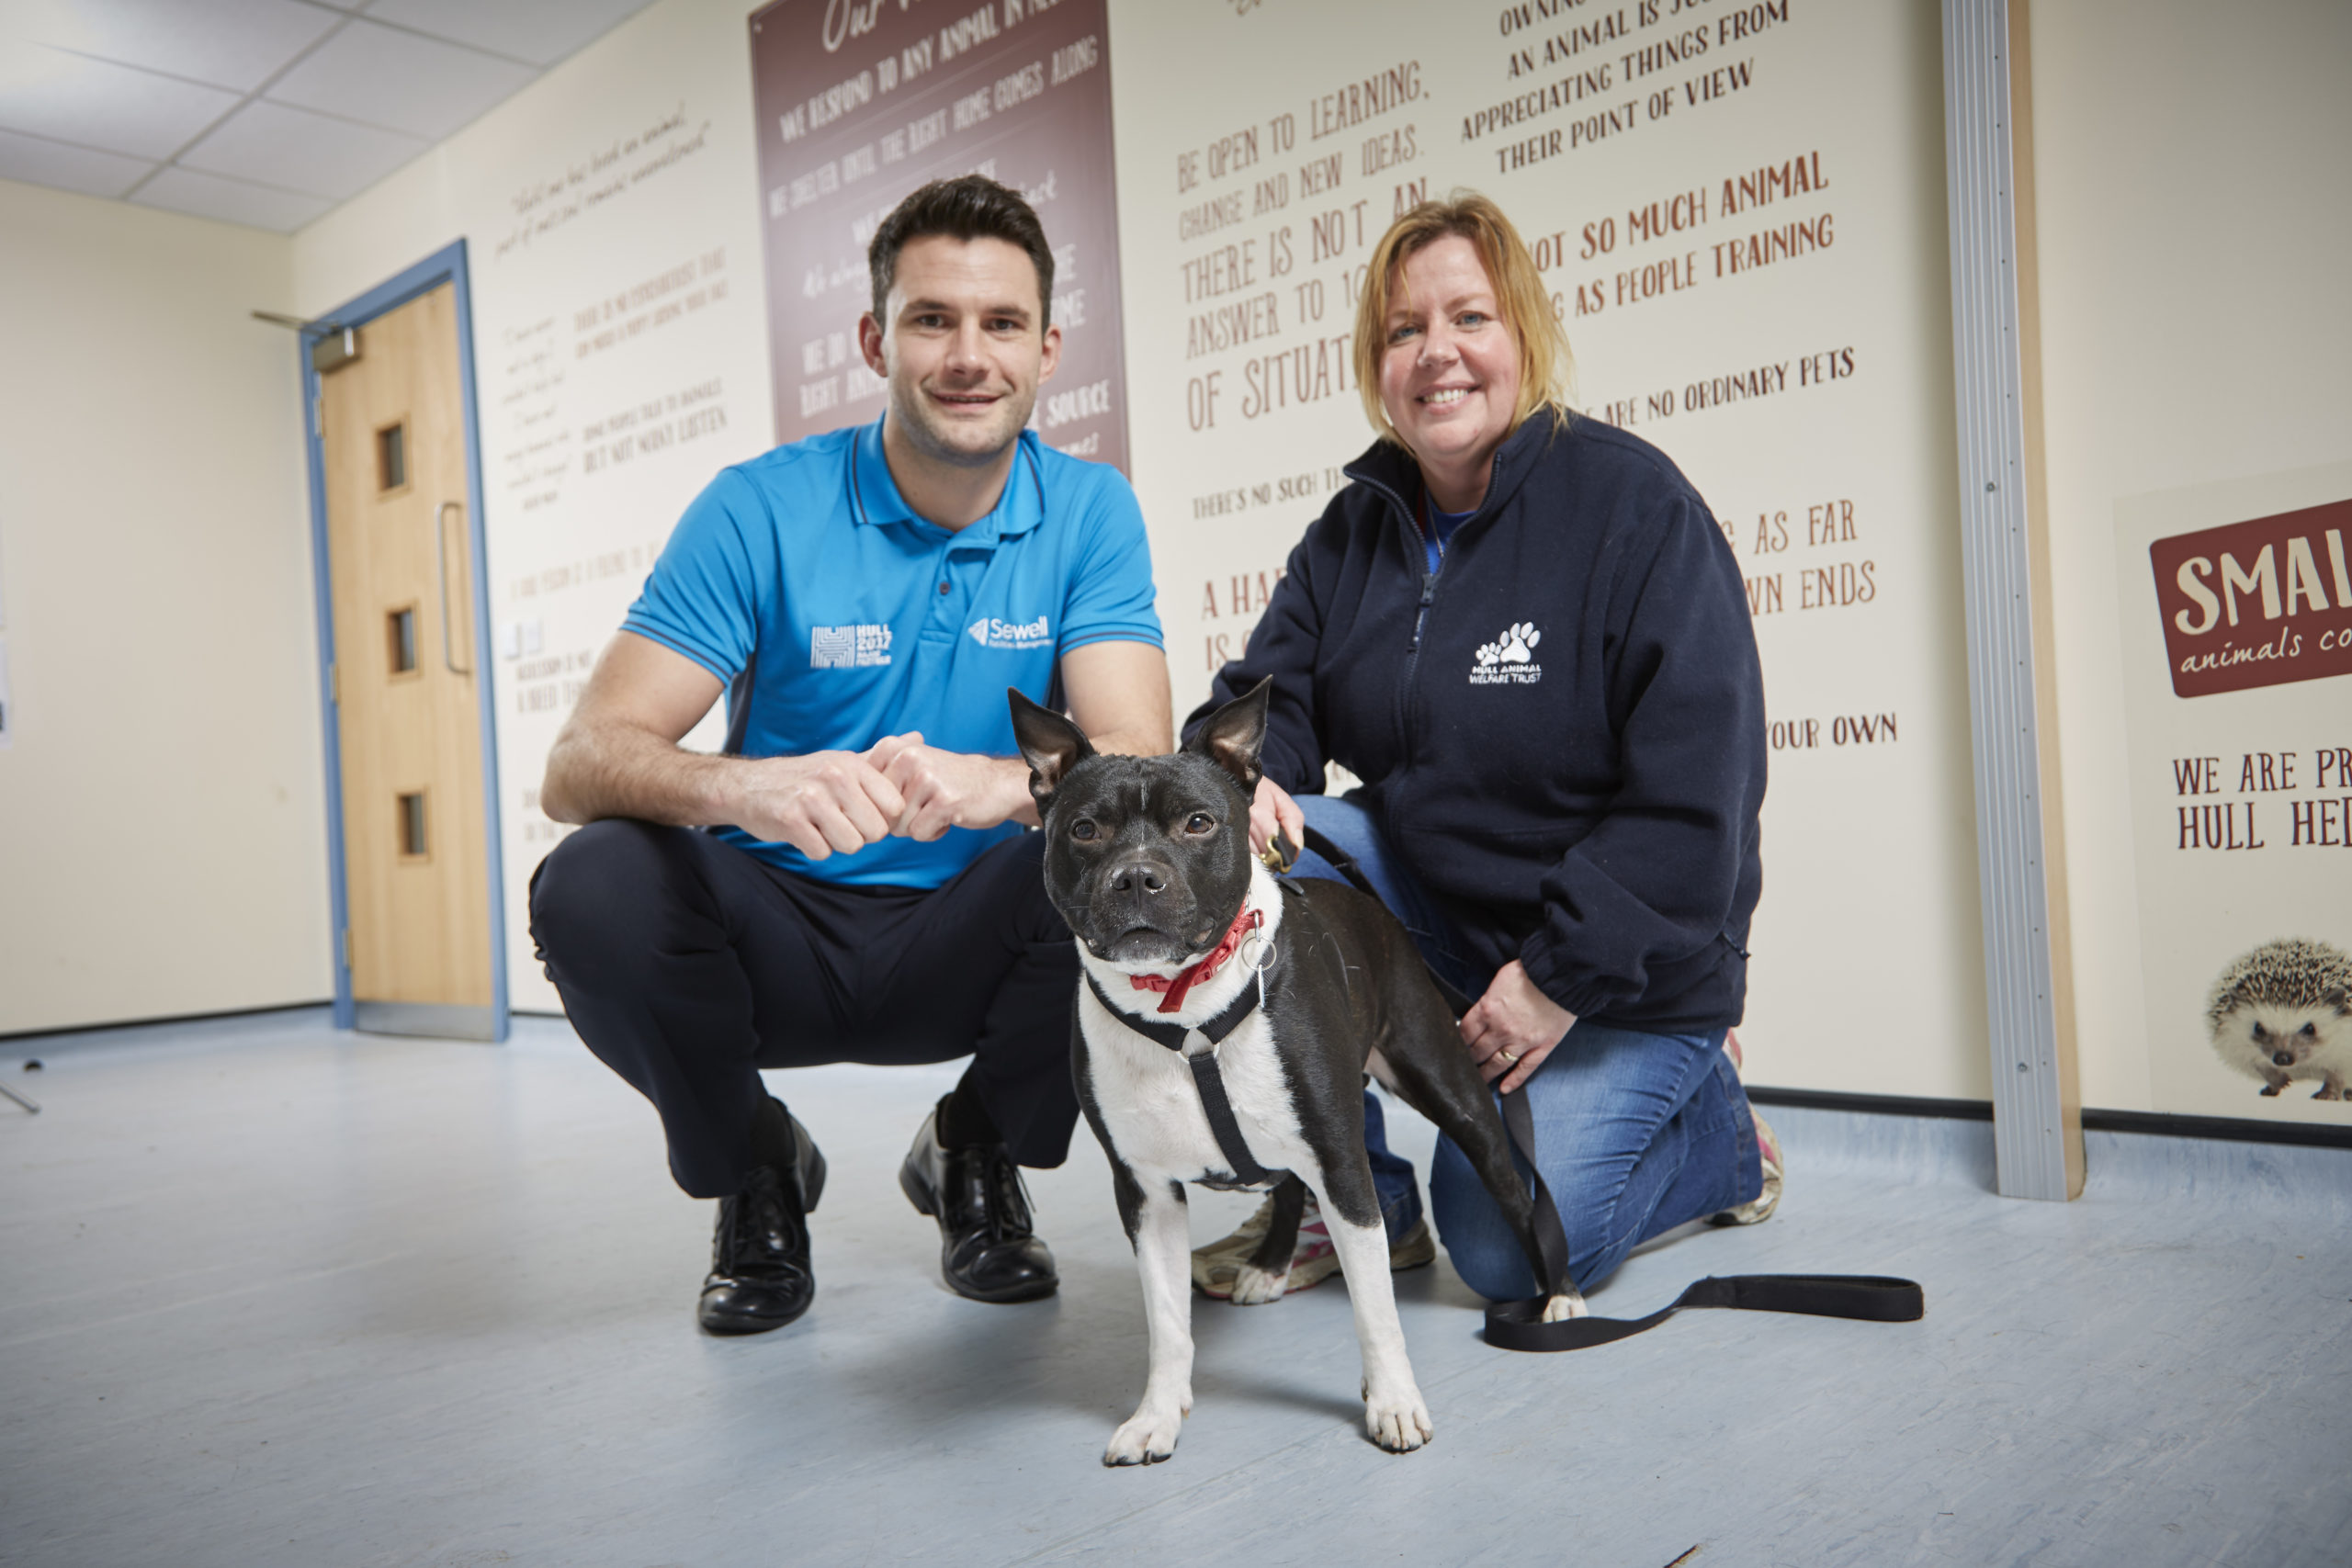 Hull Animal Welfare Trust